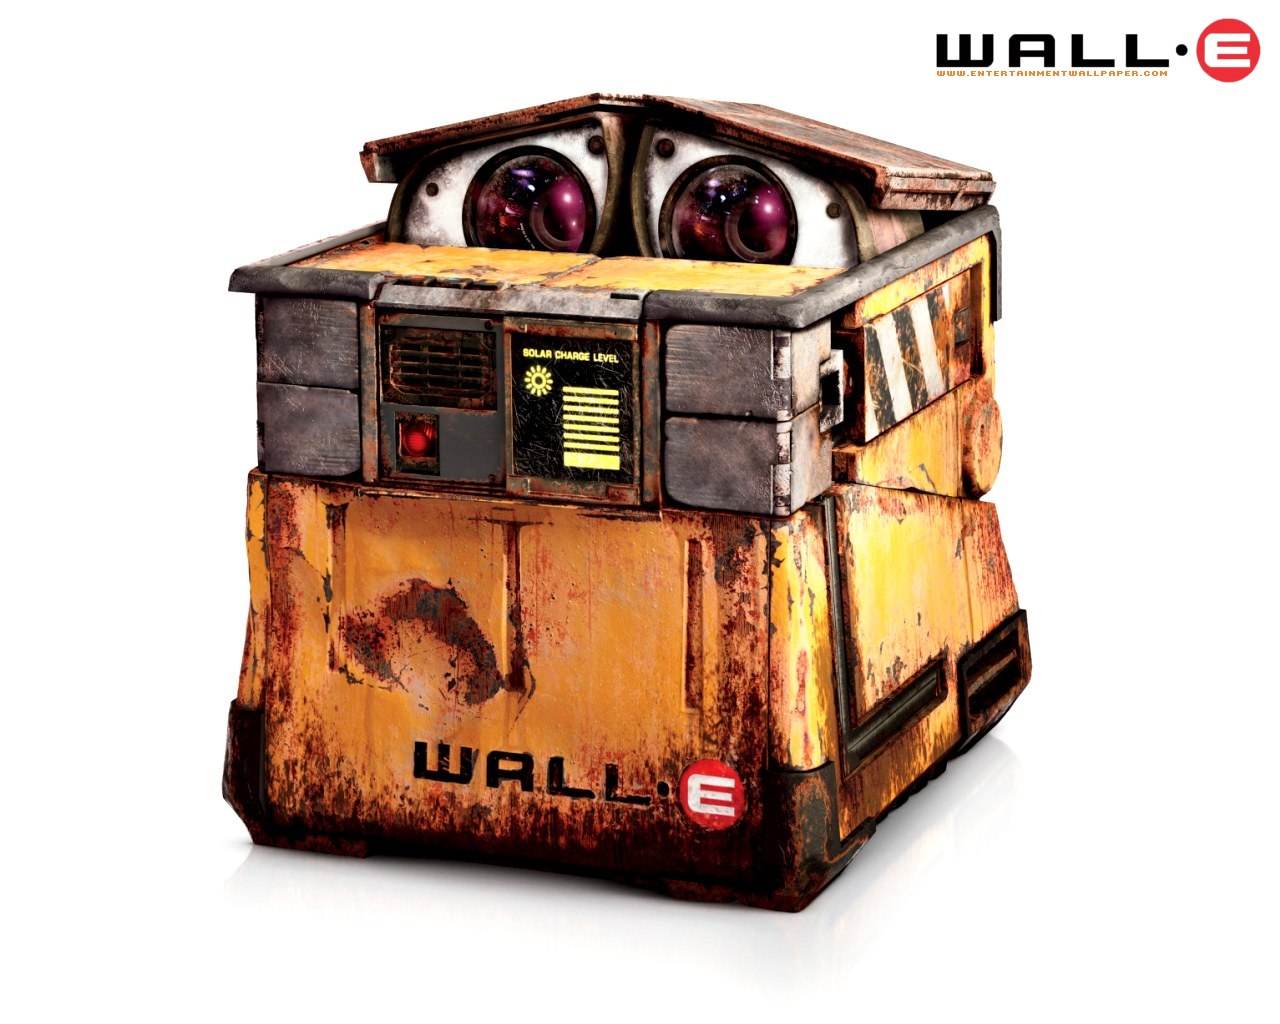 壁纸1280x1024 超可爱 机器人总动员 小瓦力壁纸壁纸 动画电影《机器人总动员WALL·E 》全套壁纸壁纸 动画电影《机器人总动员WALL·E 》全套壁纸图片 动画电影《机器人总动员WALL·E 》全套壁纸素材 影视壁纸 影视图库 影视图片素材桌面壁纸